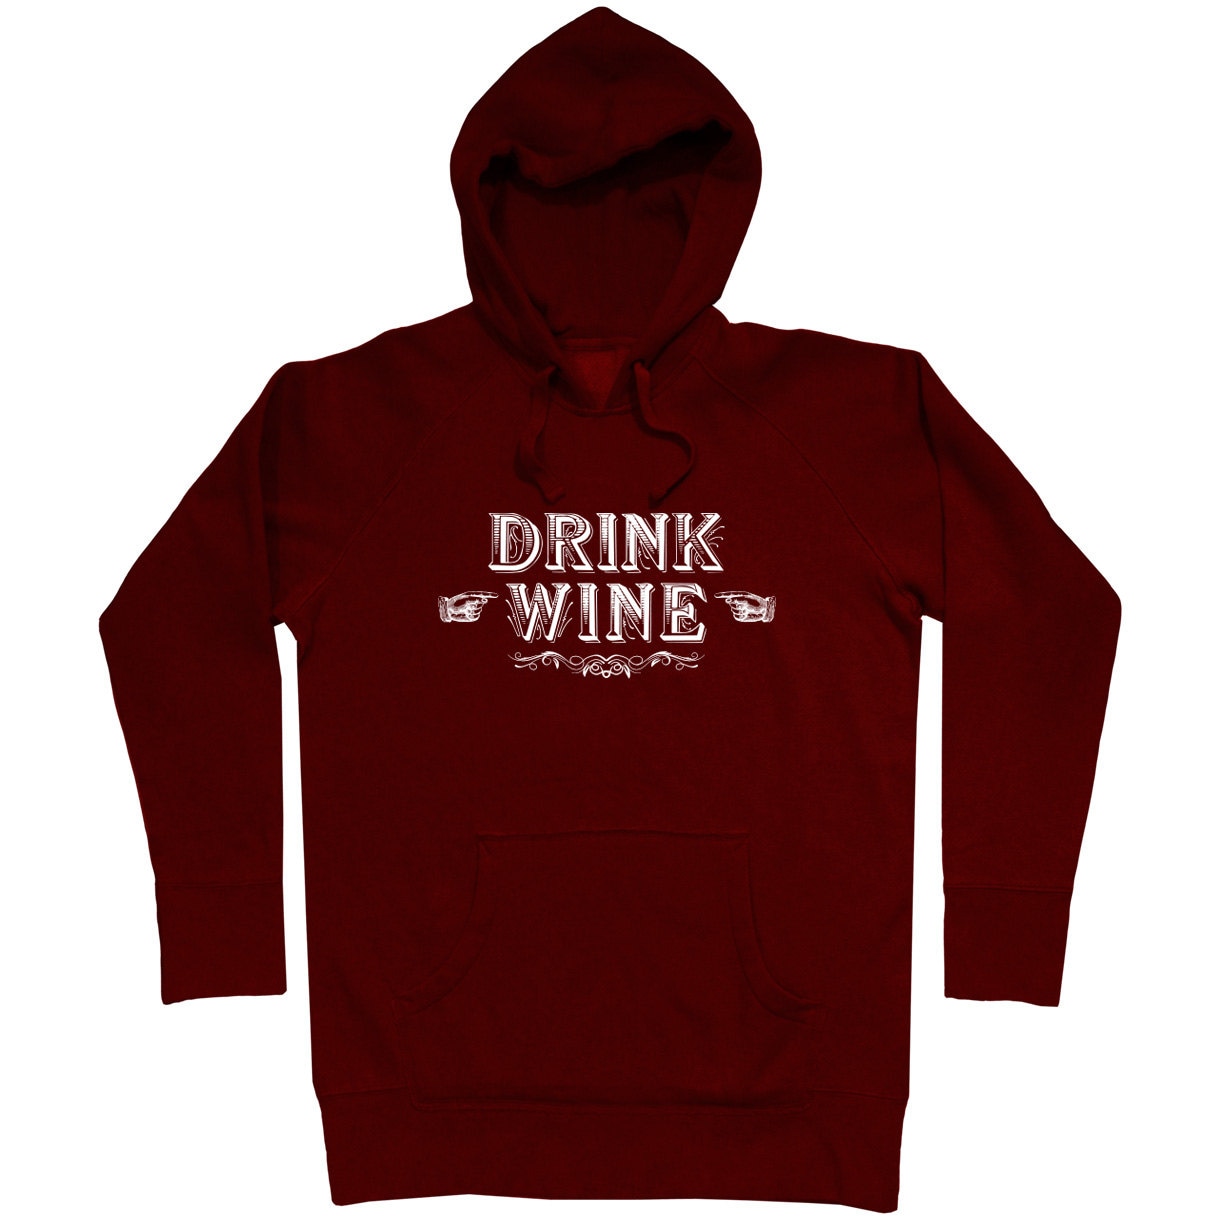 Drink Wine Hoodie Men S M L XL 2x Wine Hoody Sweatshirt | Etsy